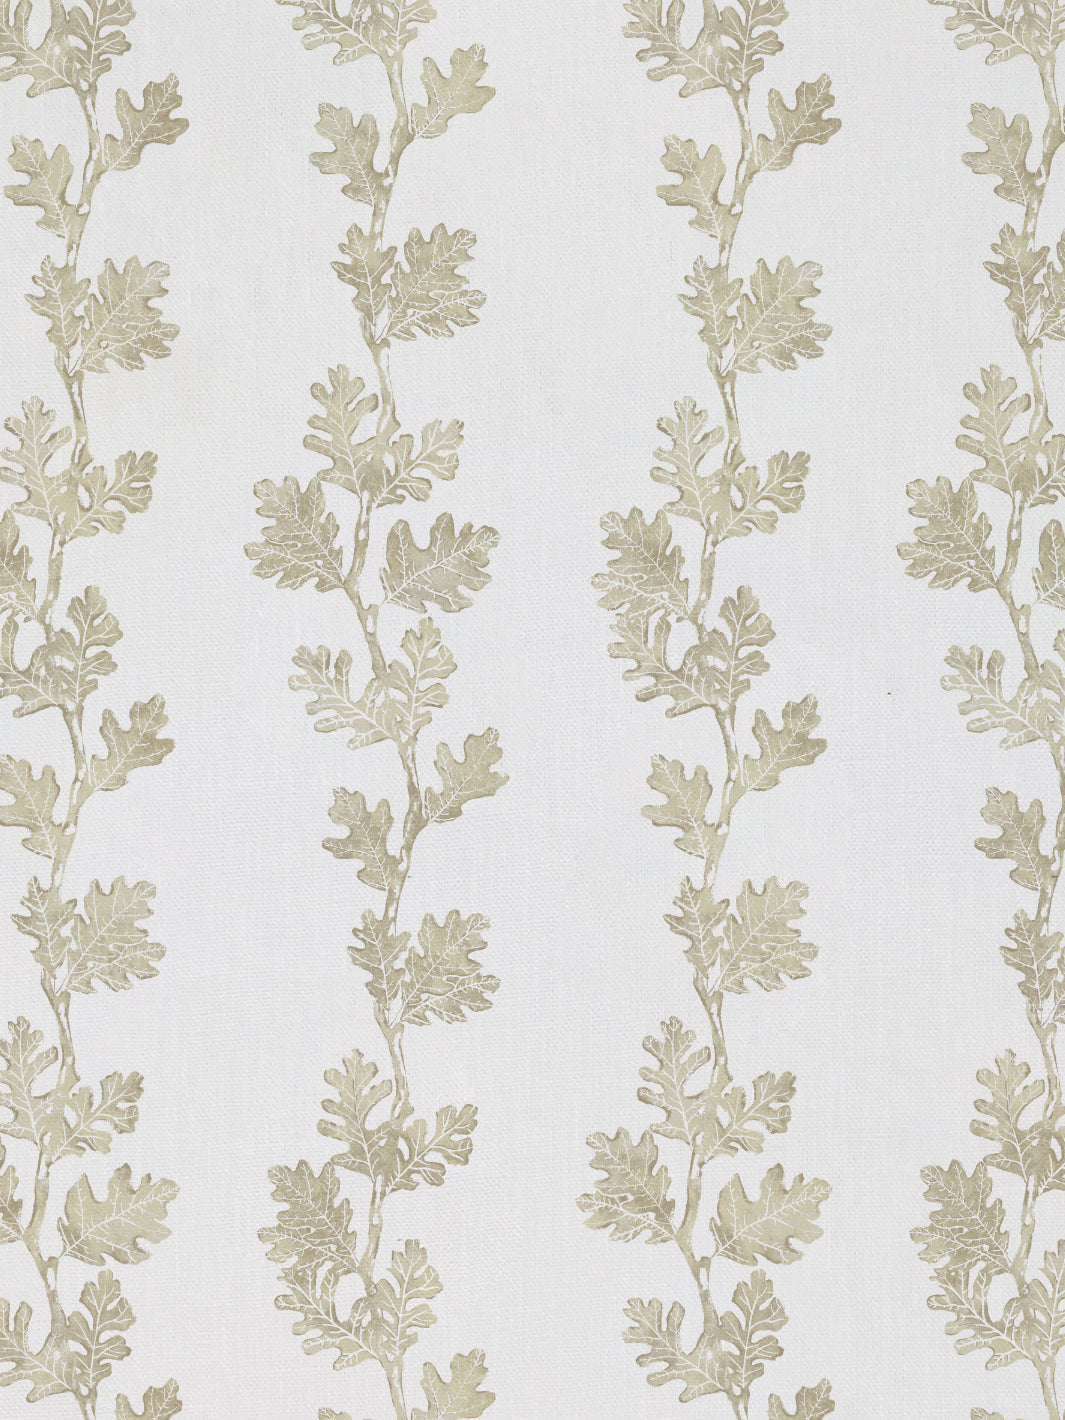 &#39;Valley Oak Stripe&#39; Linen Fabric - Neutral